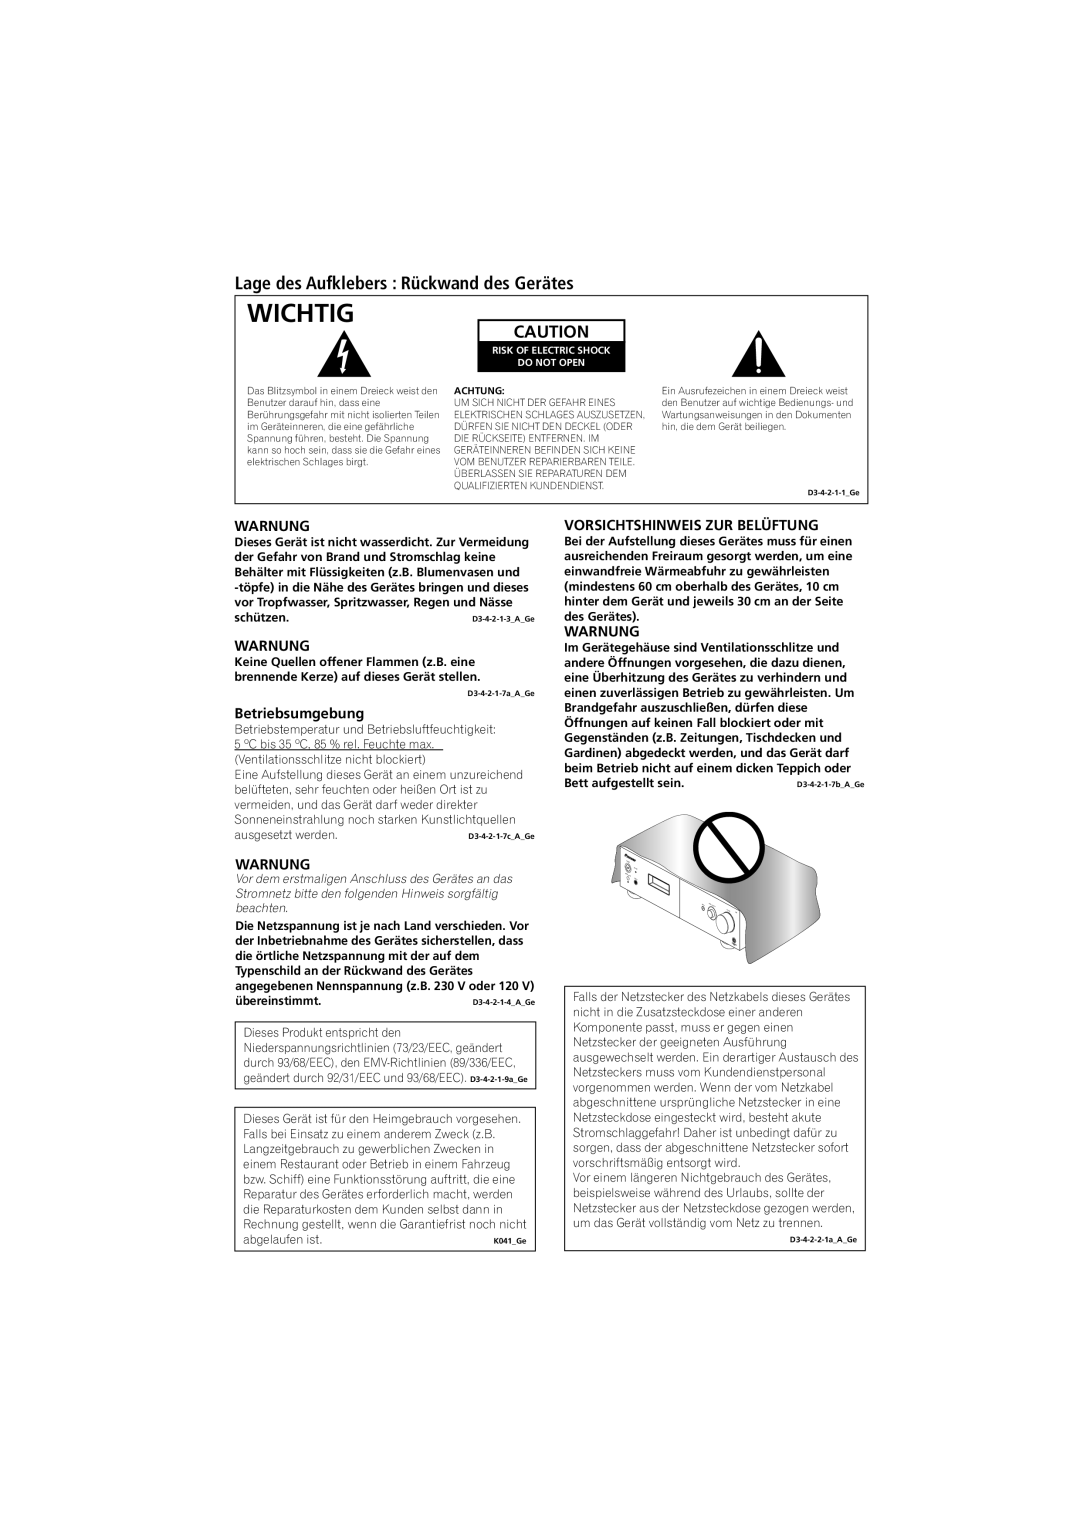 Pioneer A-A9-J manual Wichtig, Lage des Aufklebers Rückwand des Gerätes, Warnung, Betriebsumgebung 